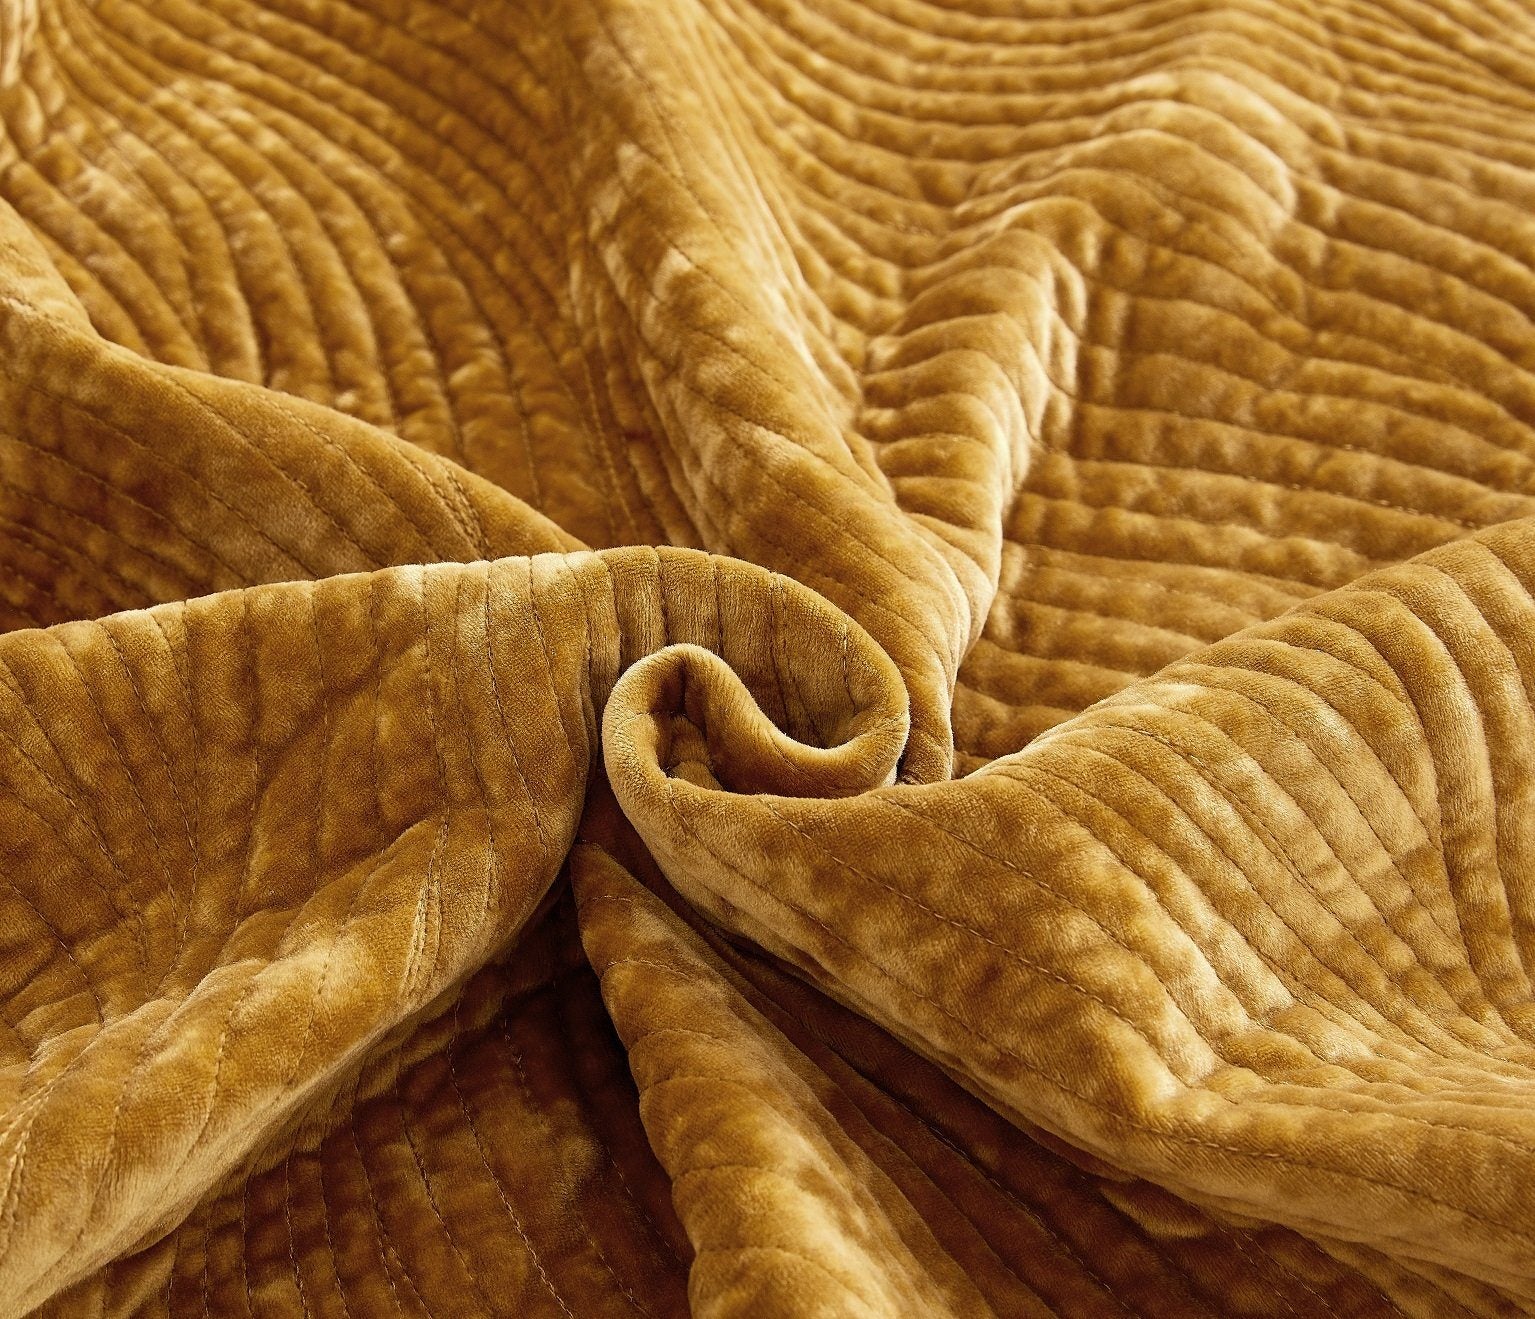 Tache Velvet Dreams Melted Gold Plush Waves Pillow Sham (JHW-852Y) - Tache Home Fashion